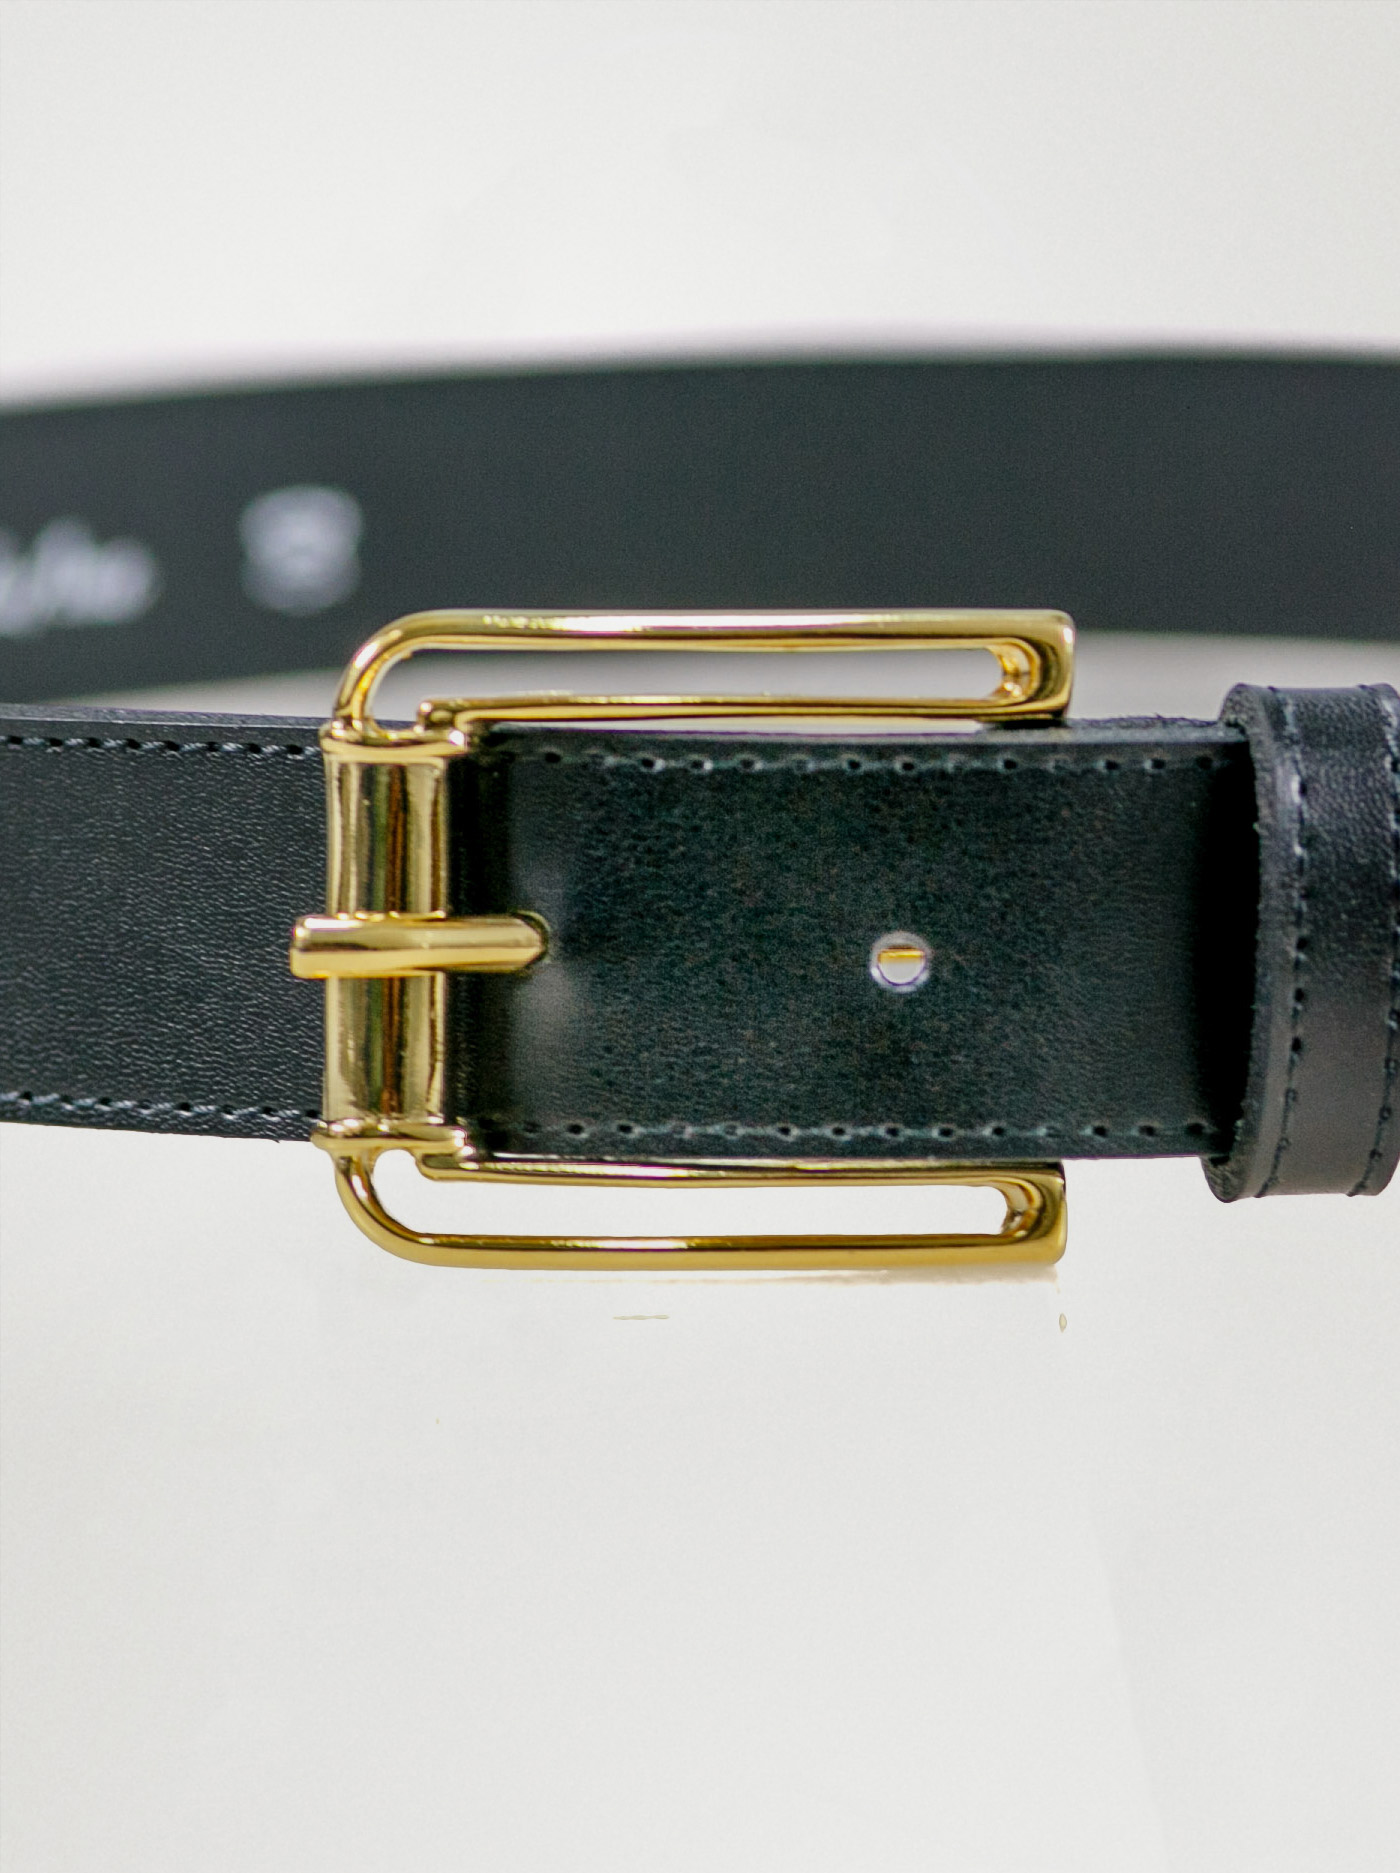 Leather belt image 3